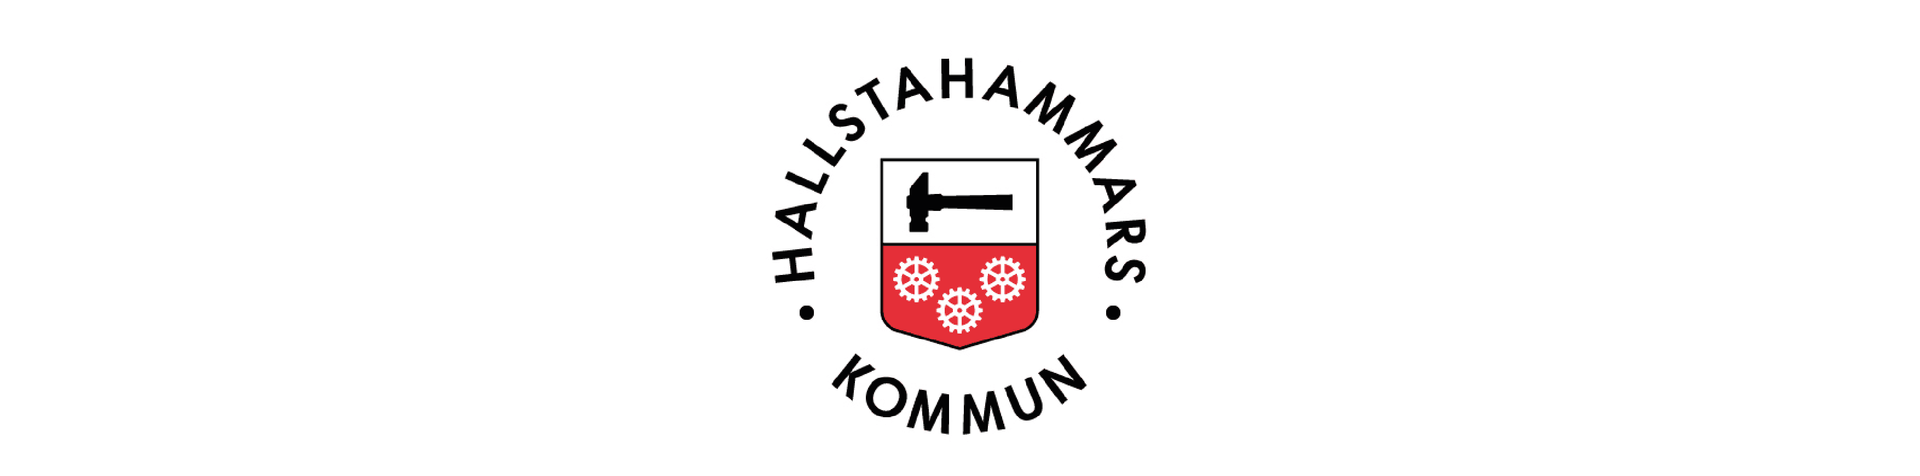 Hallstahammars kommuns logga.